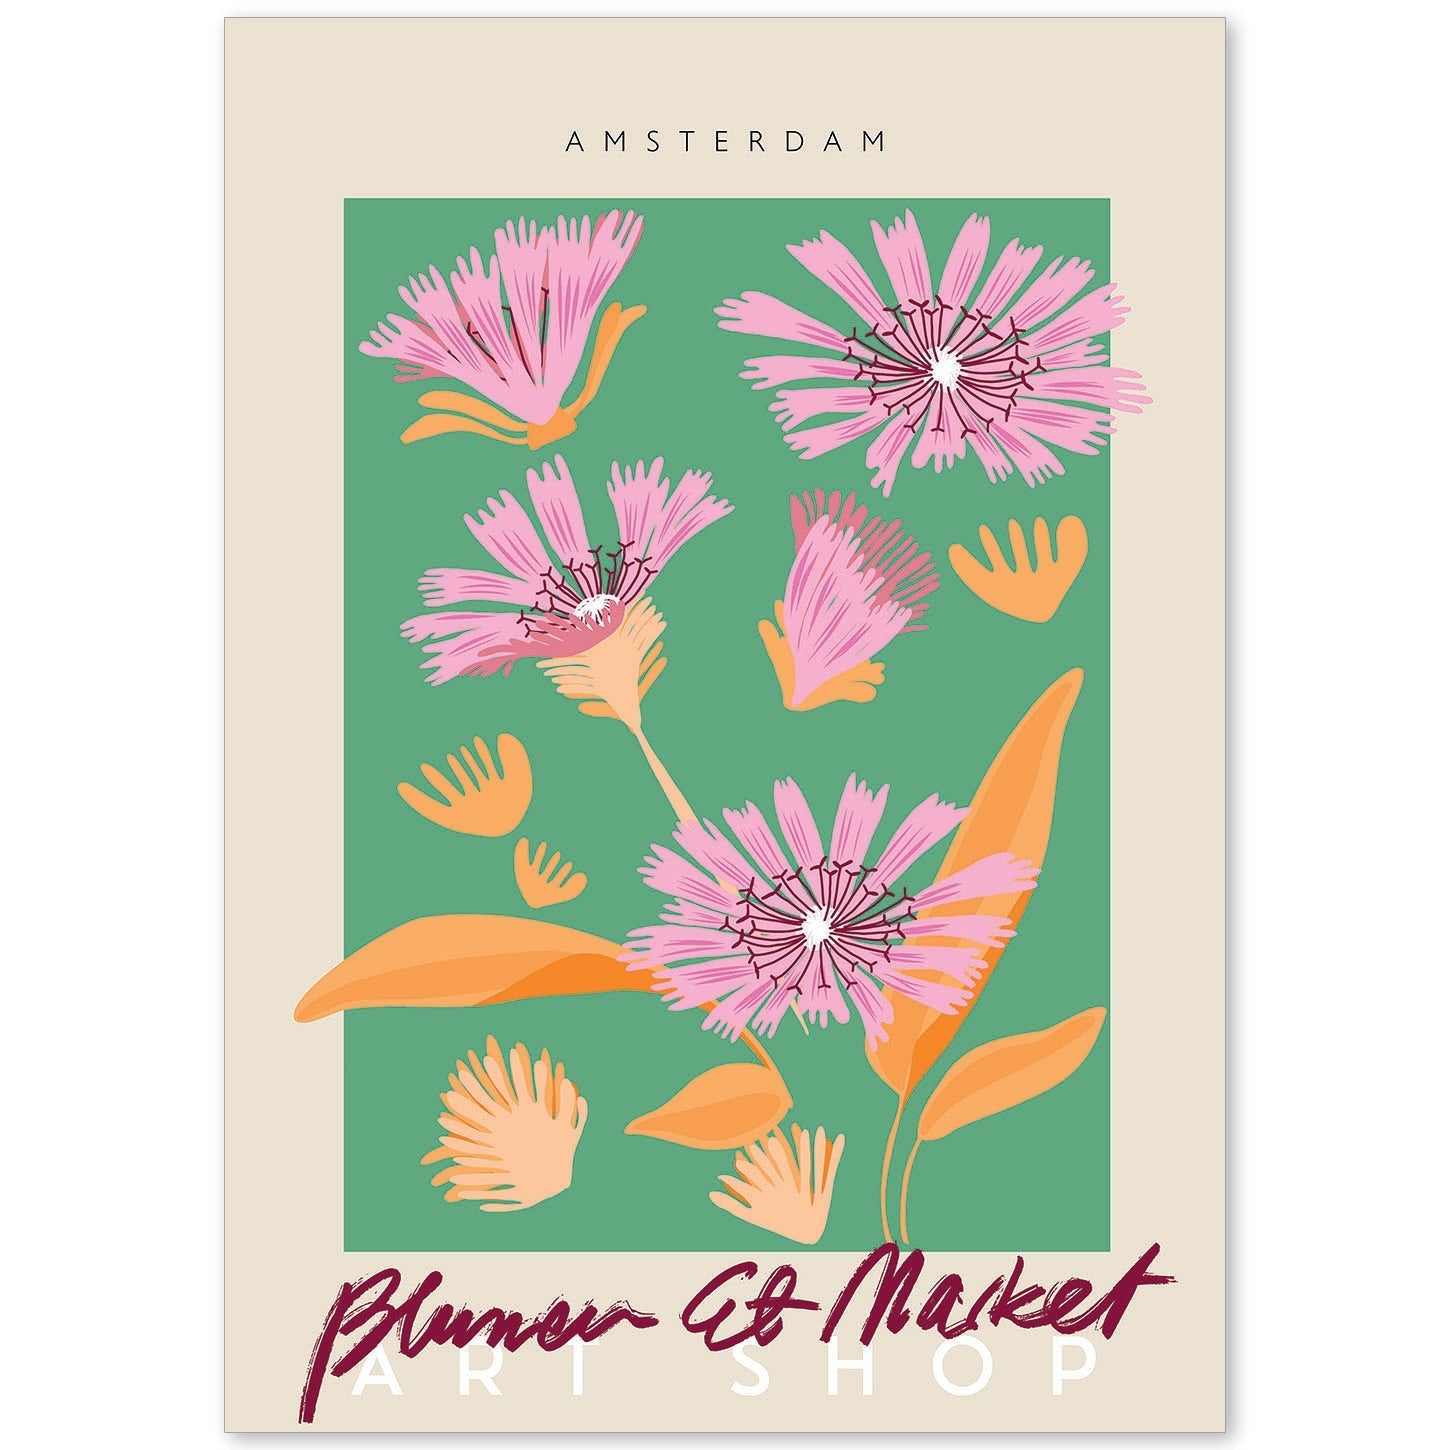 Lamina artistica decorativa con ilustración de Blumenau et Market Amsterdam-Artwork-Nacnic-A4-Sin marco-Nacnic Estudio SL